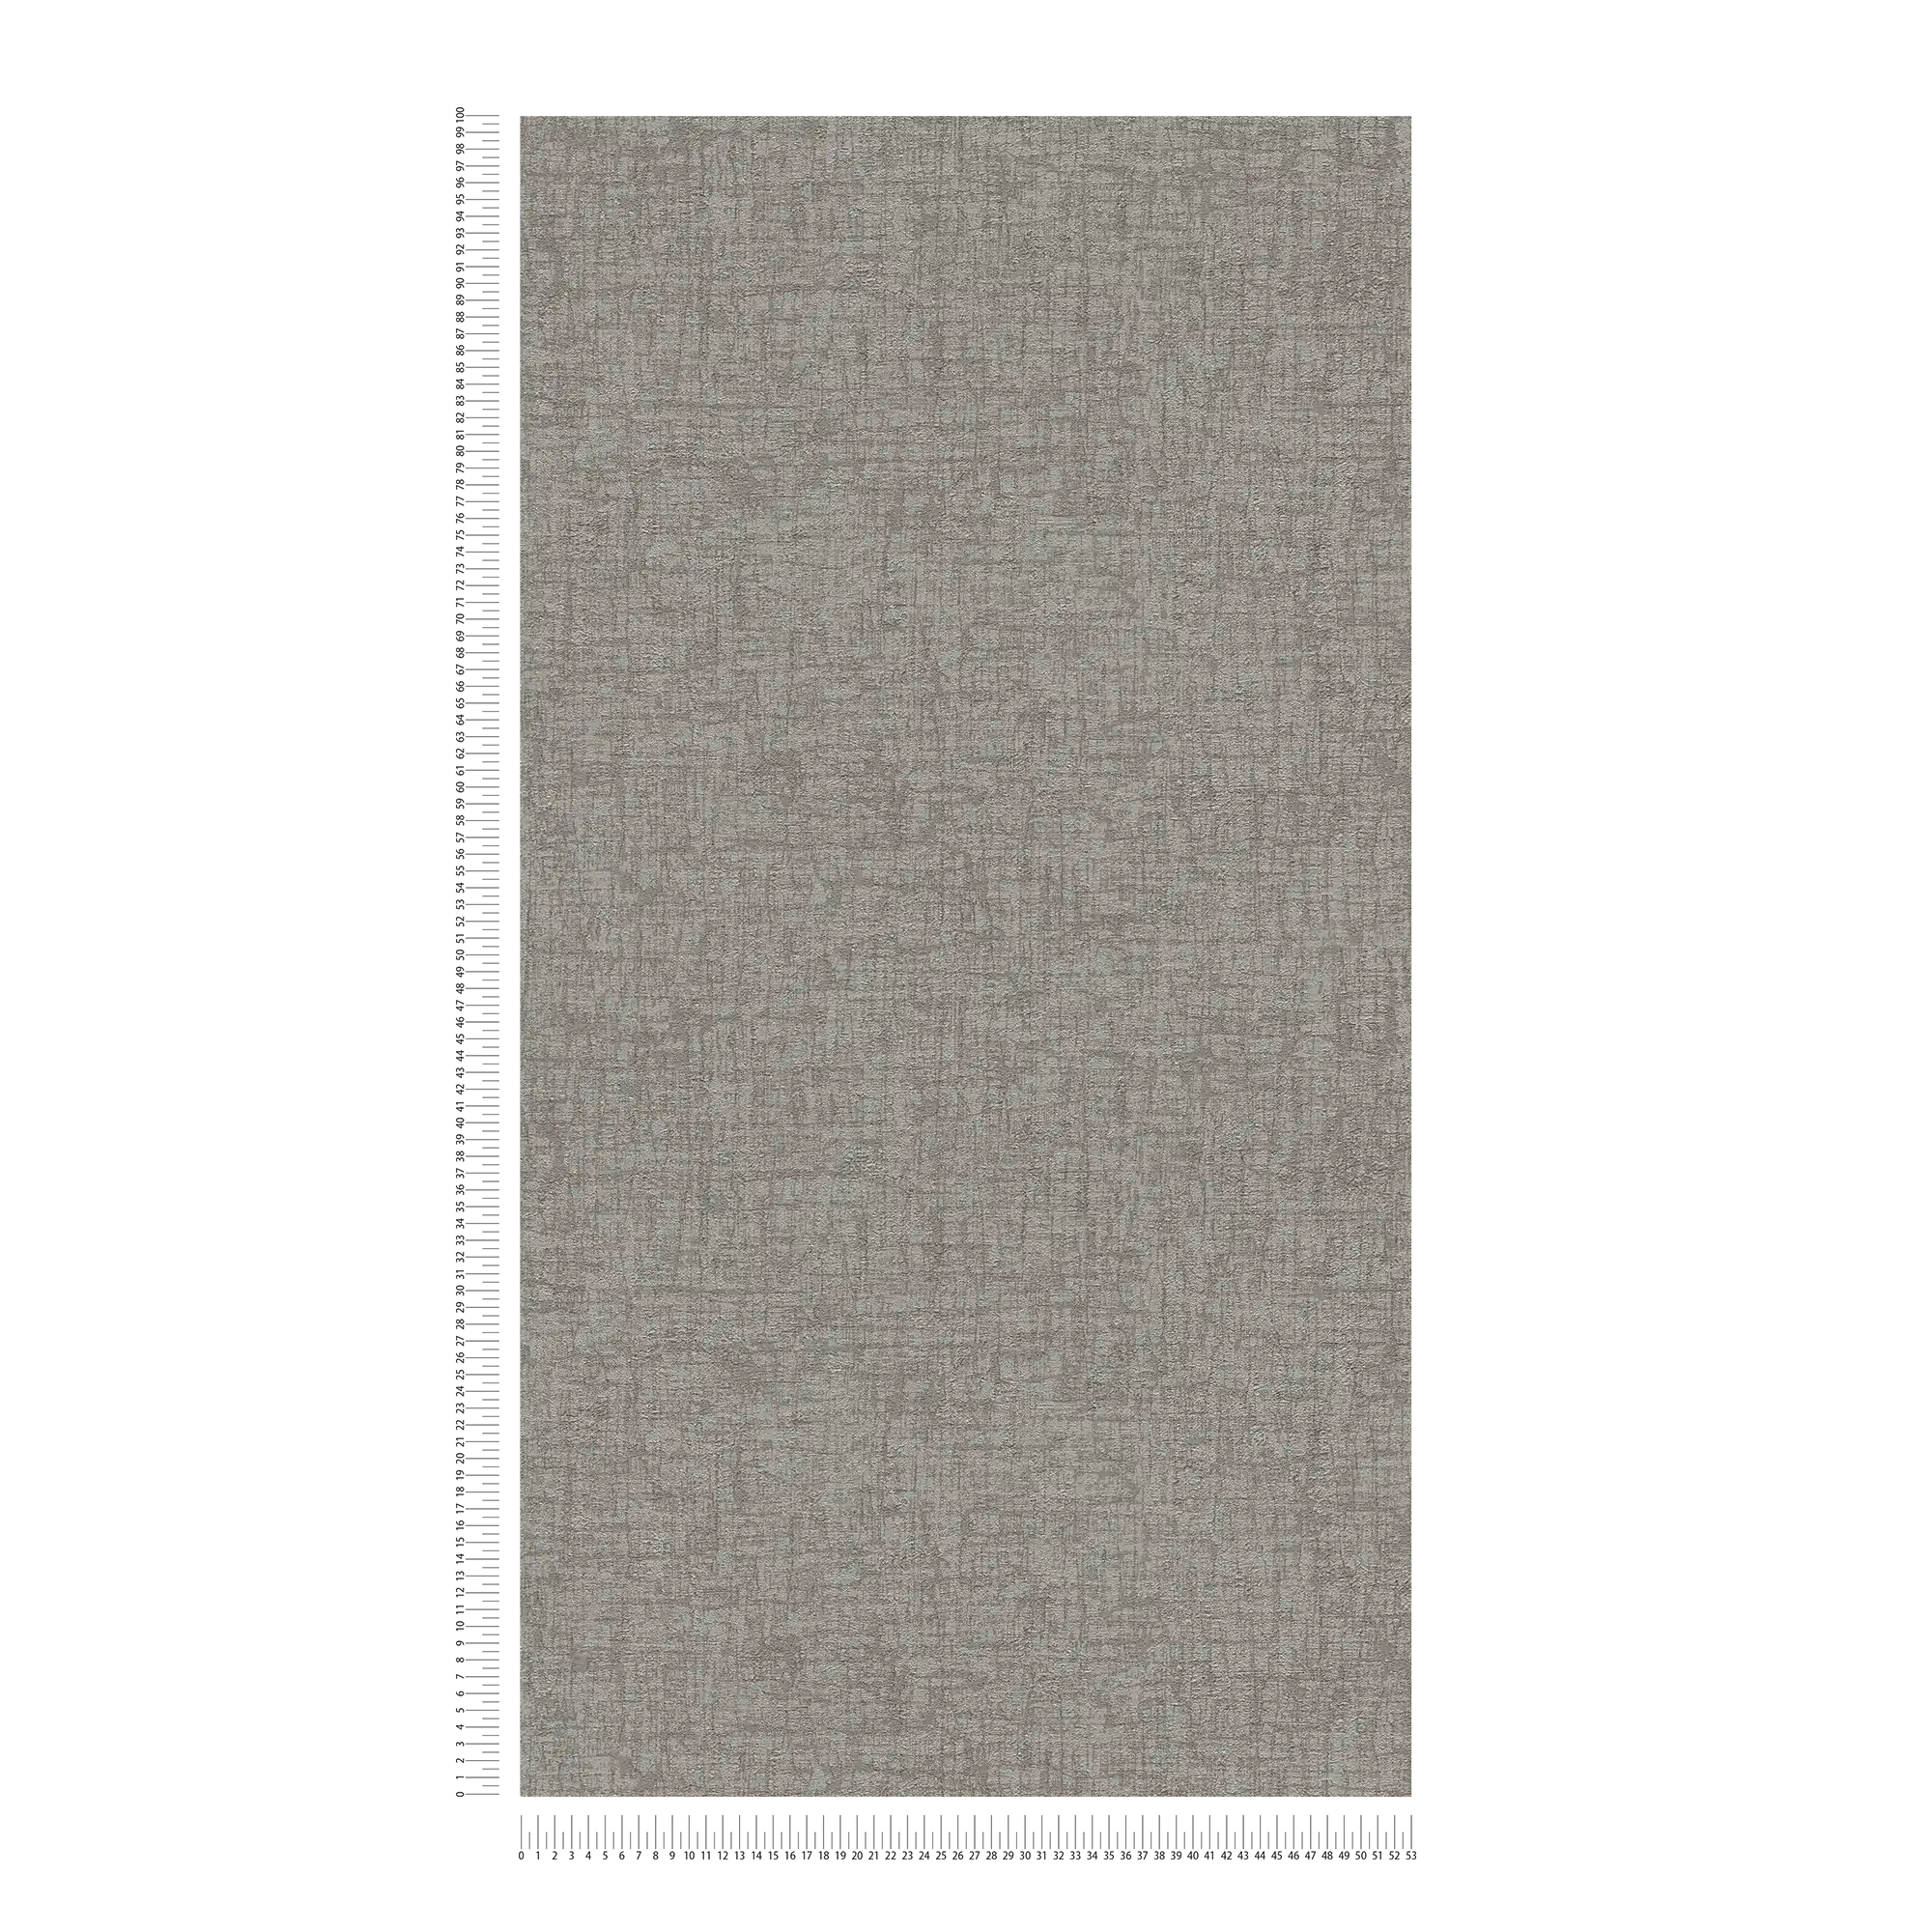             papier peint en papier intissé avec structure aspect textile - gris, gris foncé
        